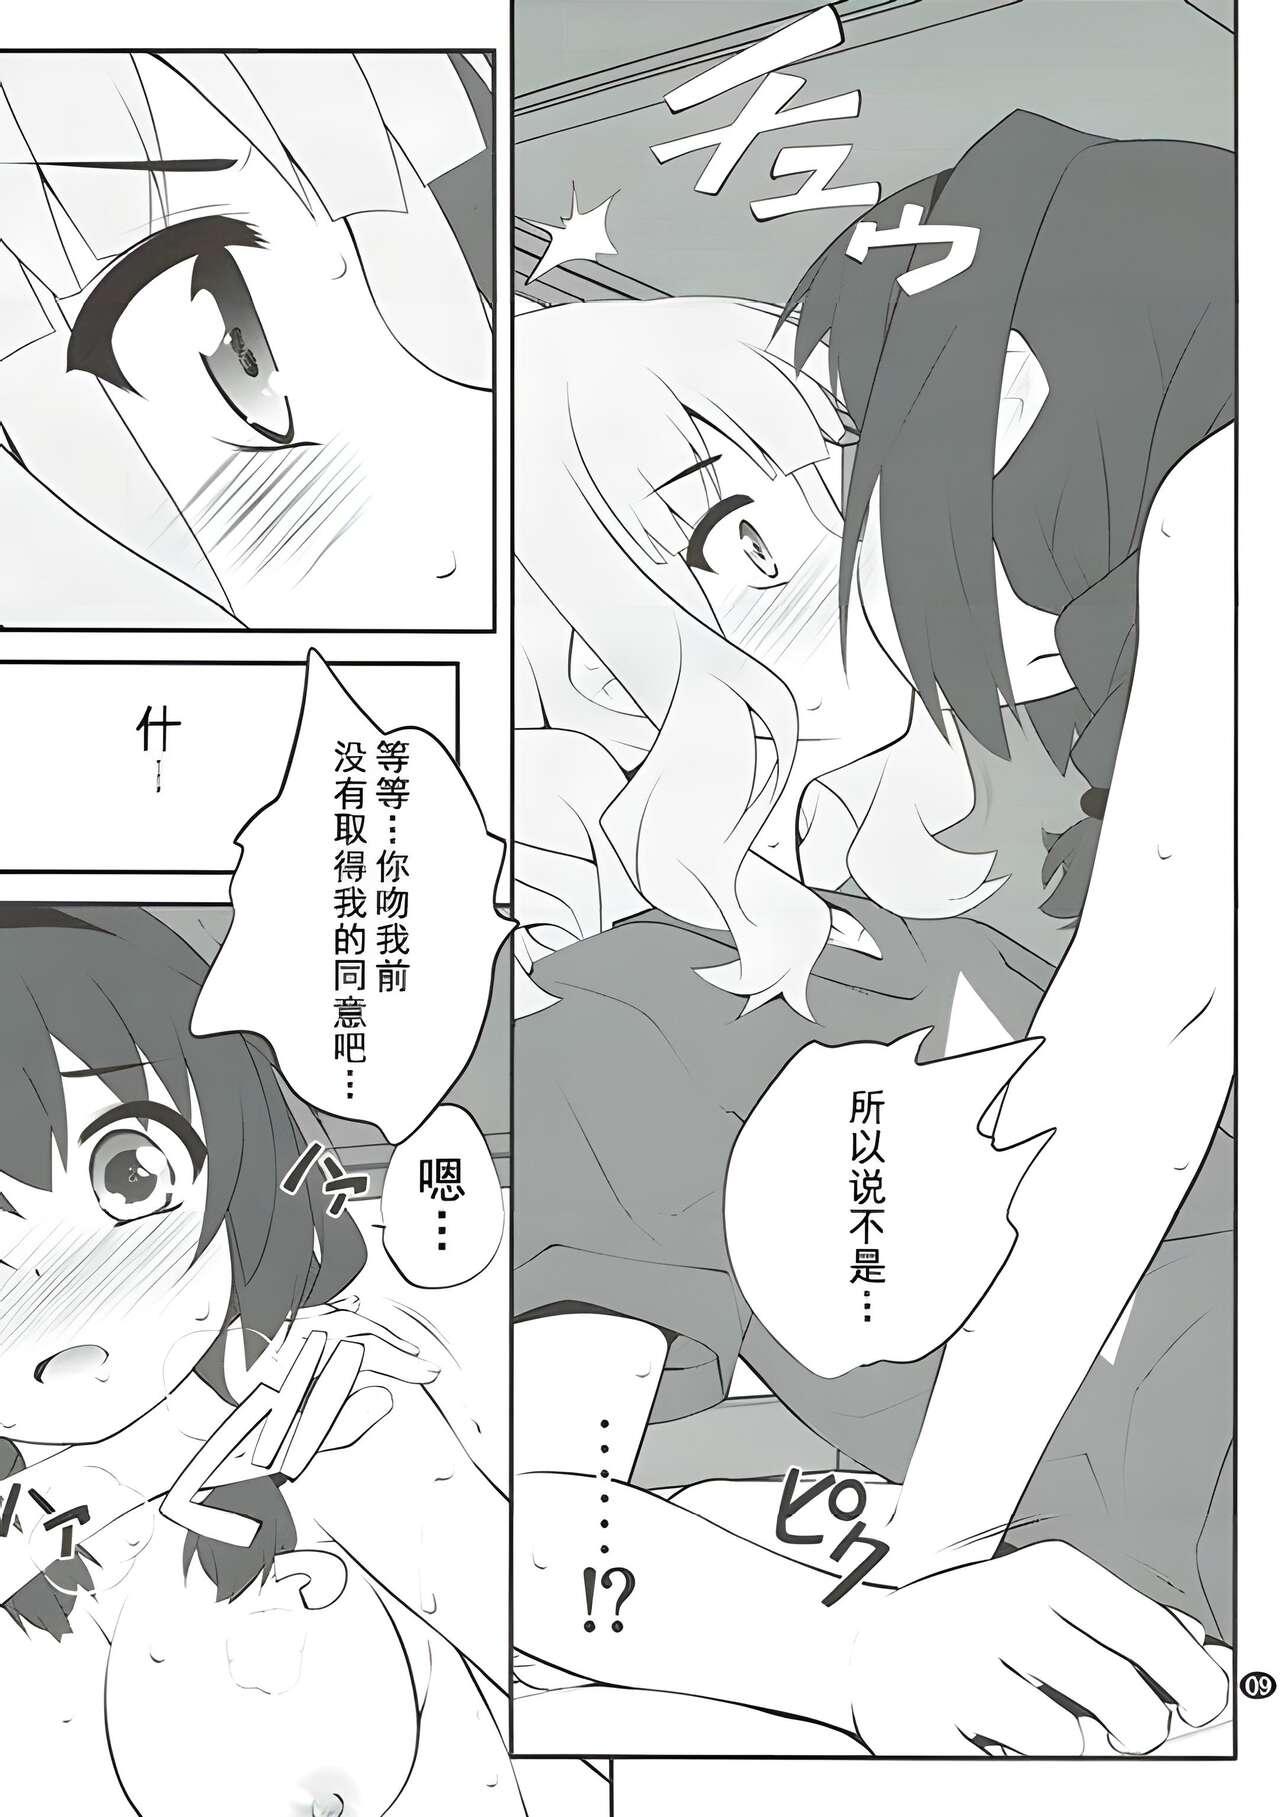 Farting Himegoto Flowers 11 - Yuruyuri Gay Boysporn - Page 8